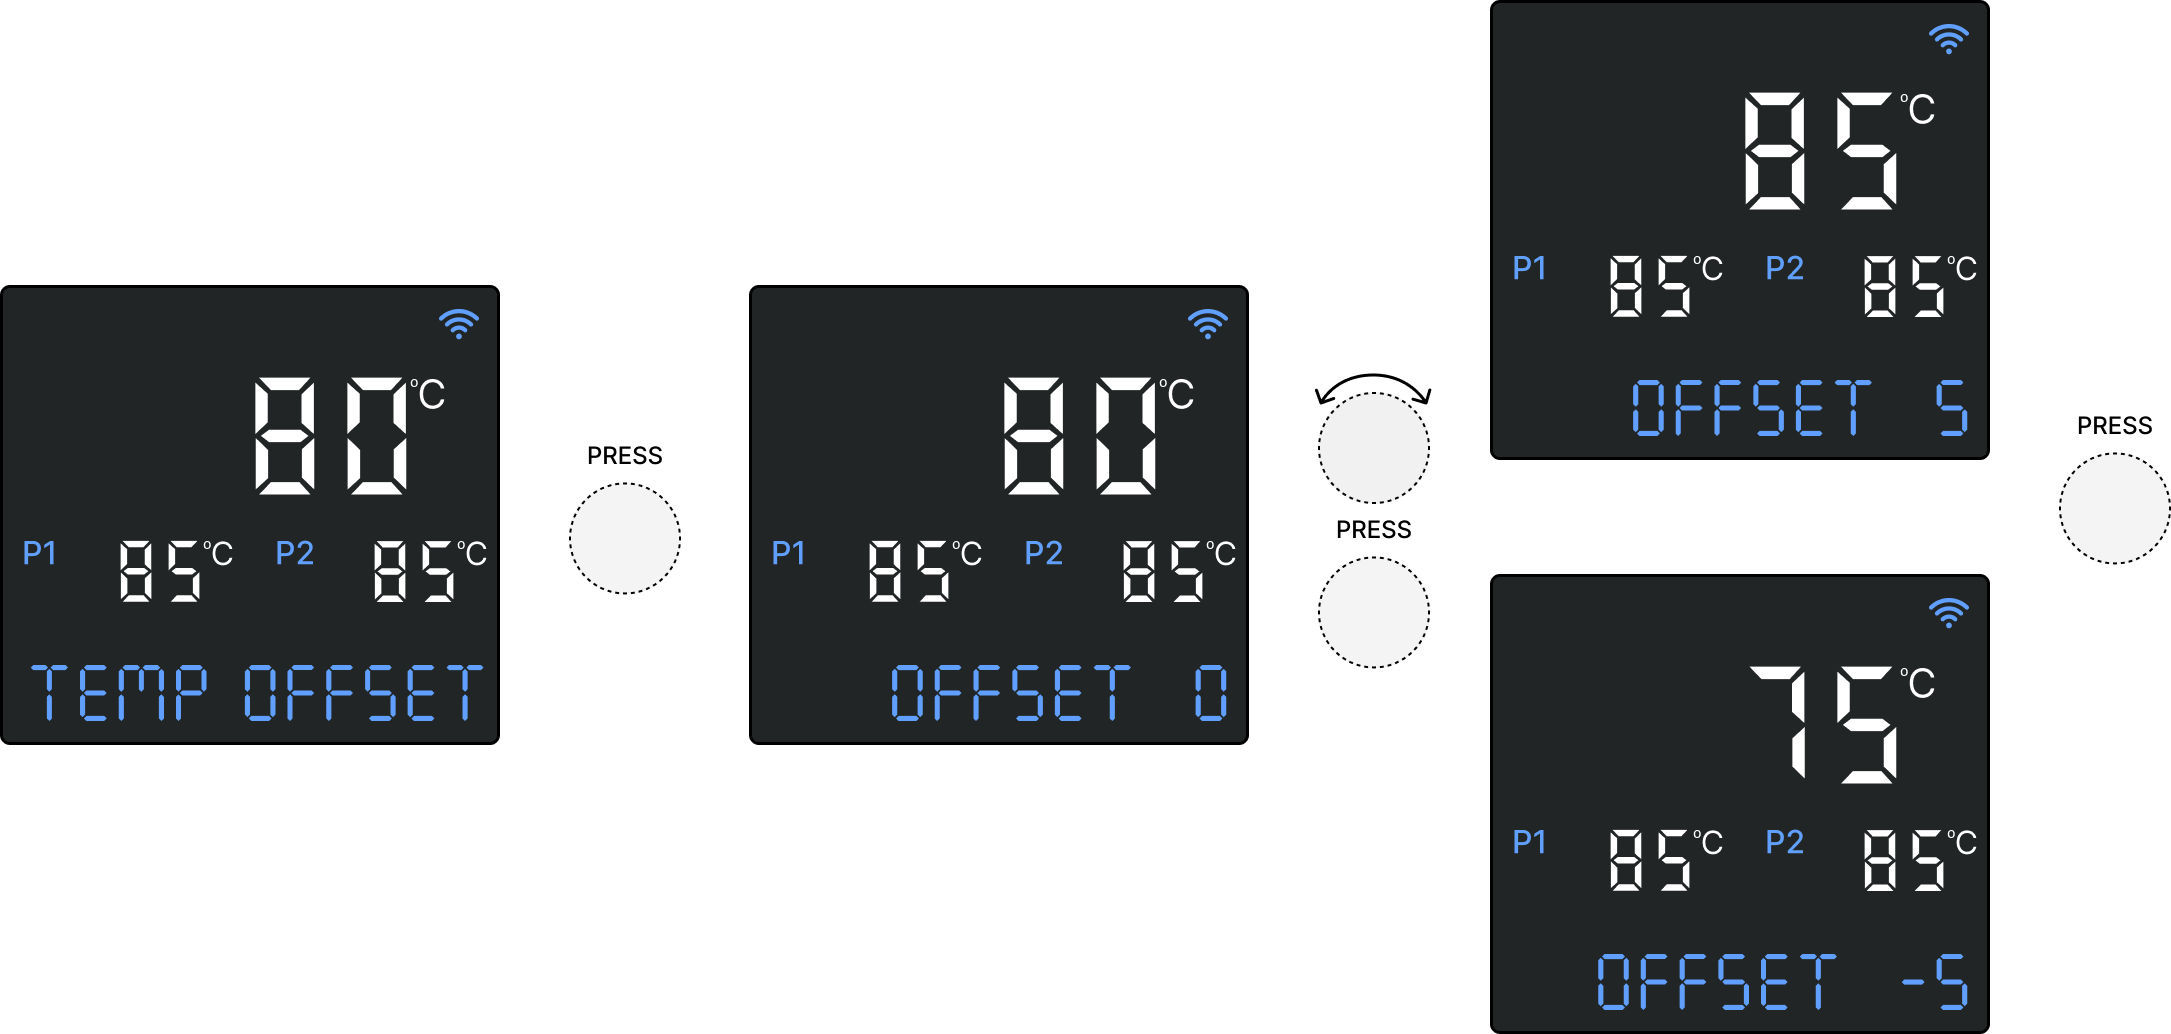 Controller screen - Temp Offset